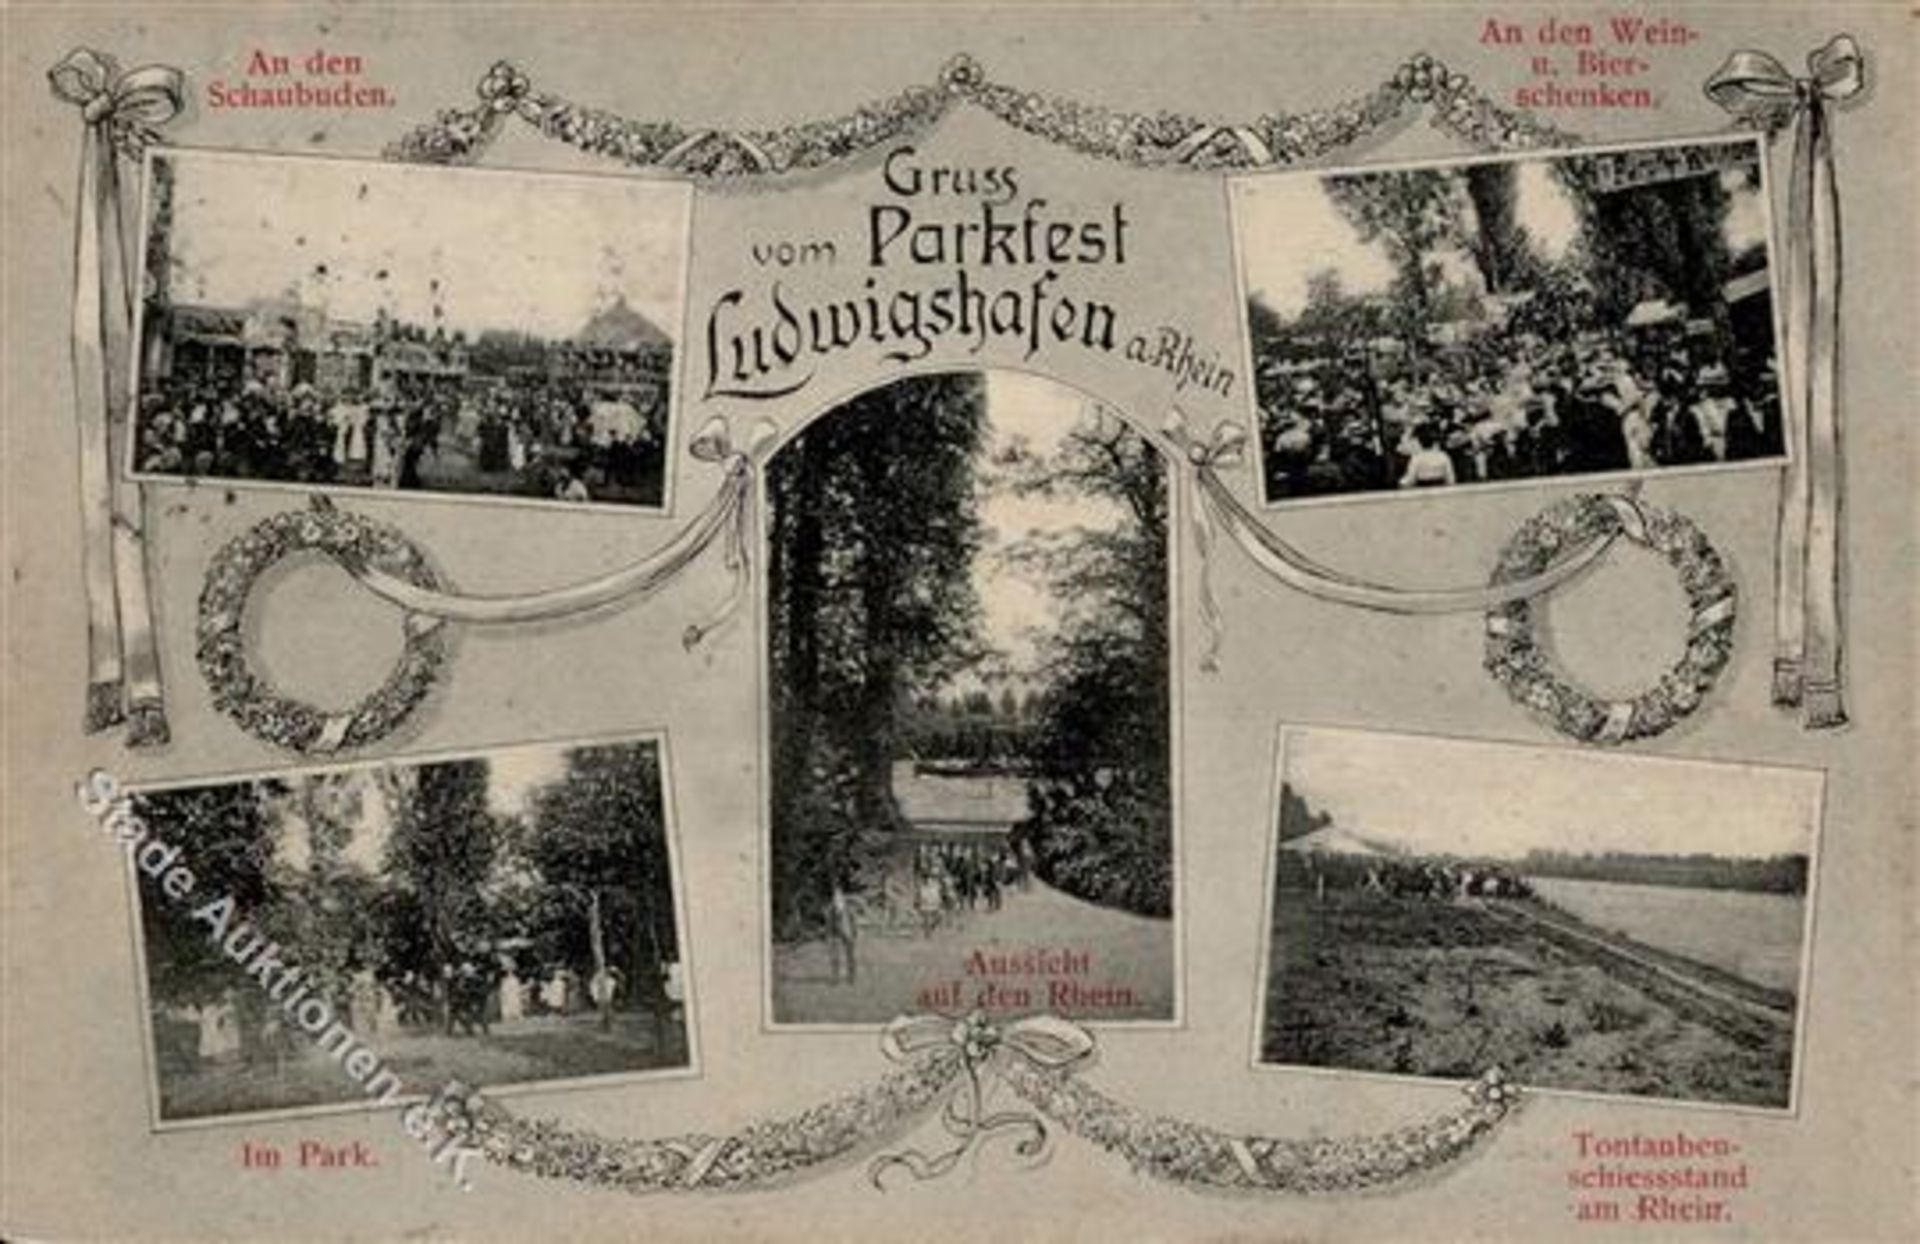 Ludwigshafen (6700) Parkfest Tontauben-Schießstand 1909 I-II (Ecken abgestossen, fleckig)Dieses